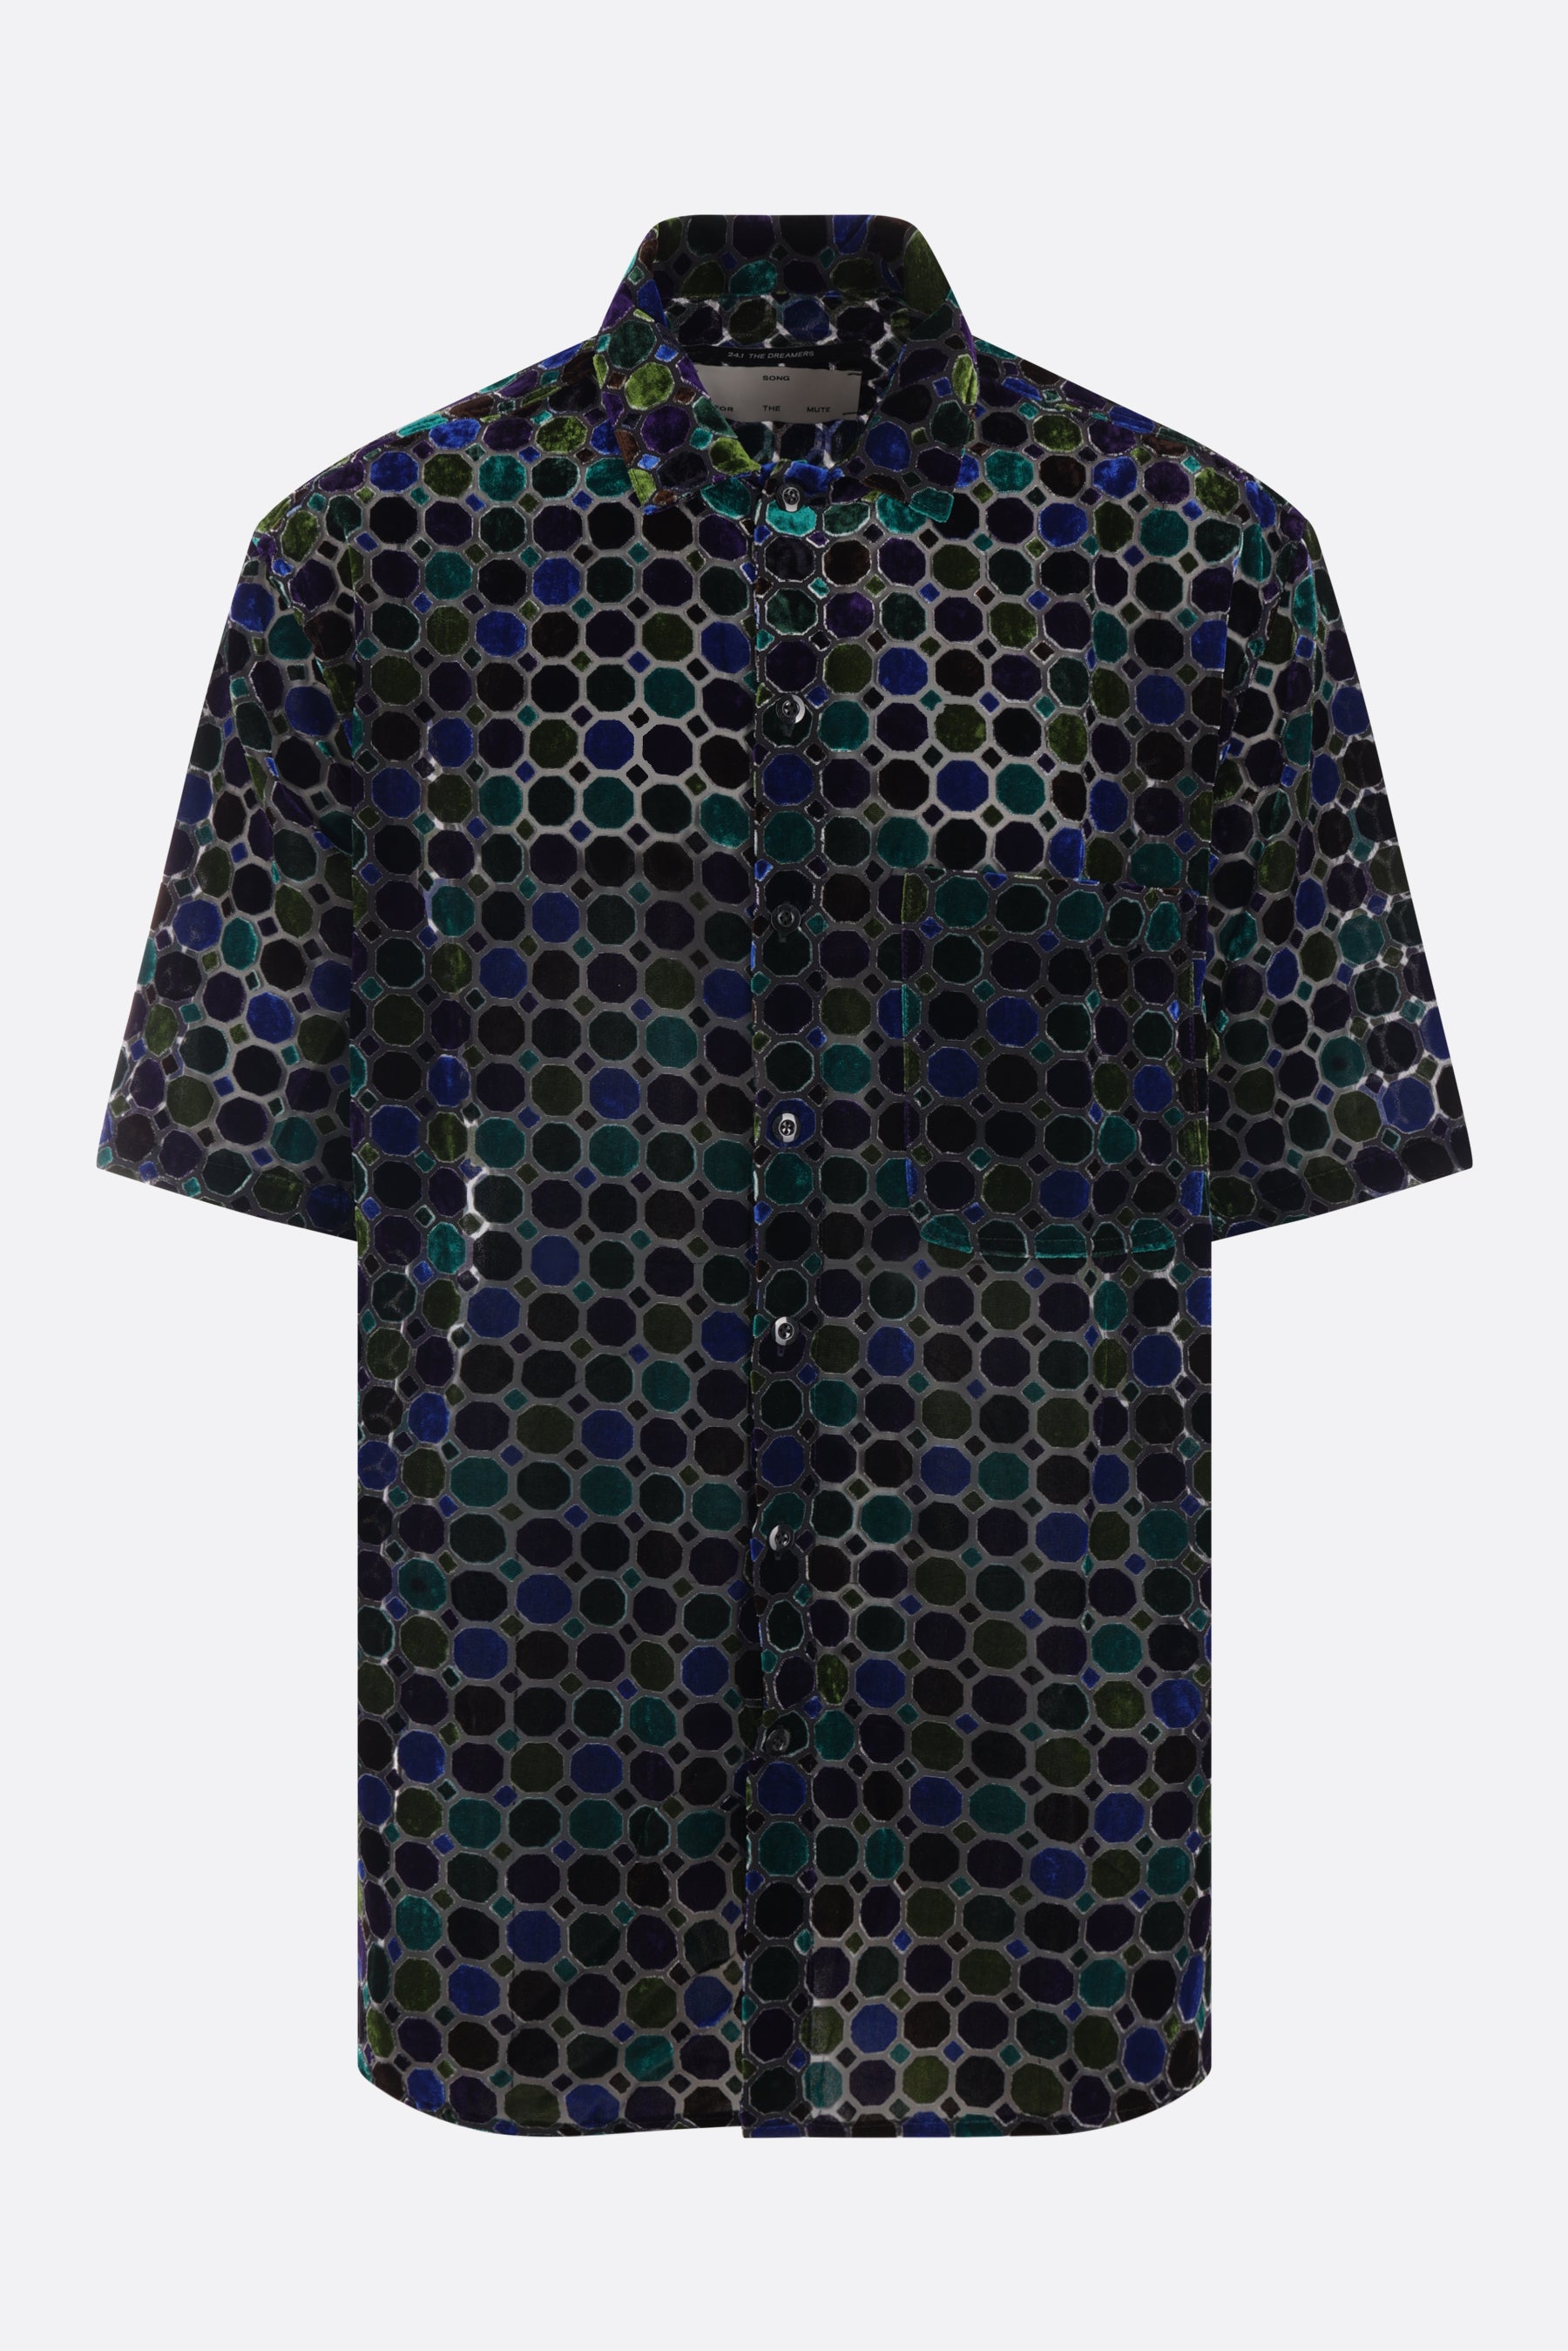 oversized shirt in stained glass velvet